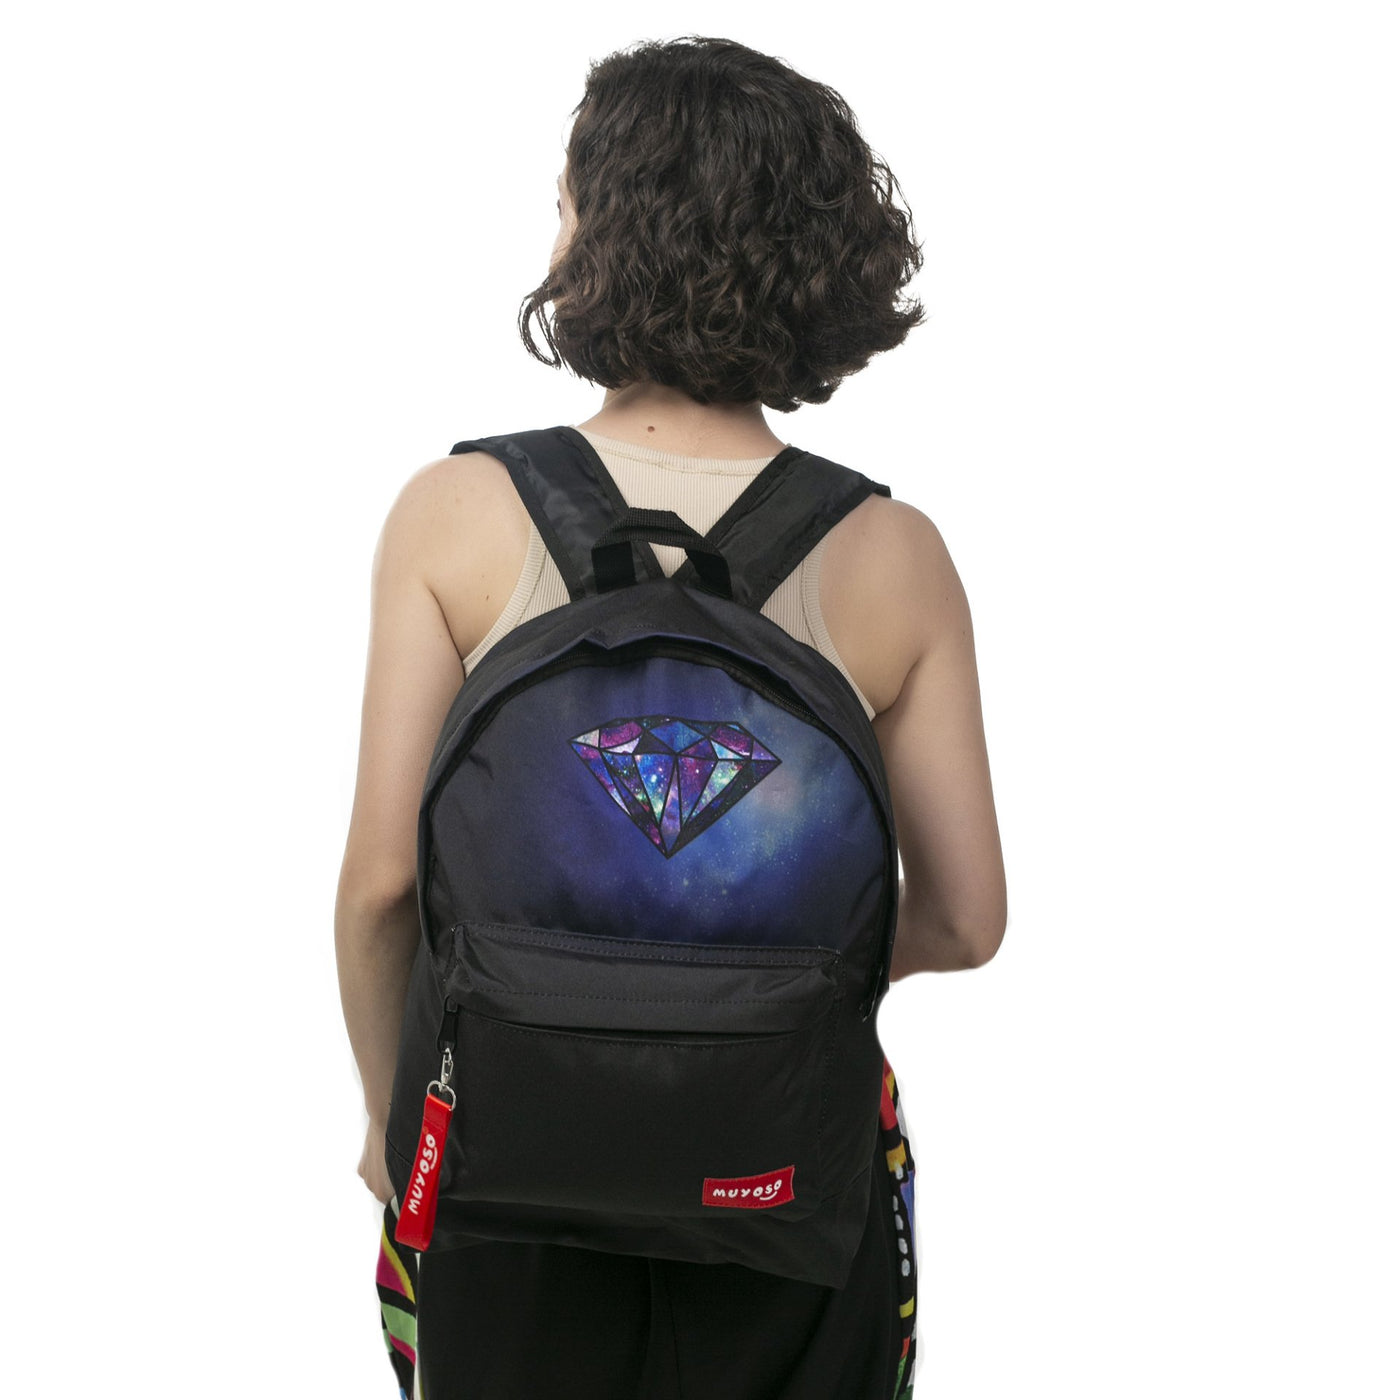 Elmas backpack